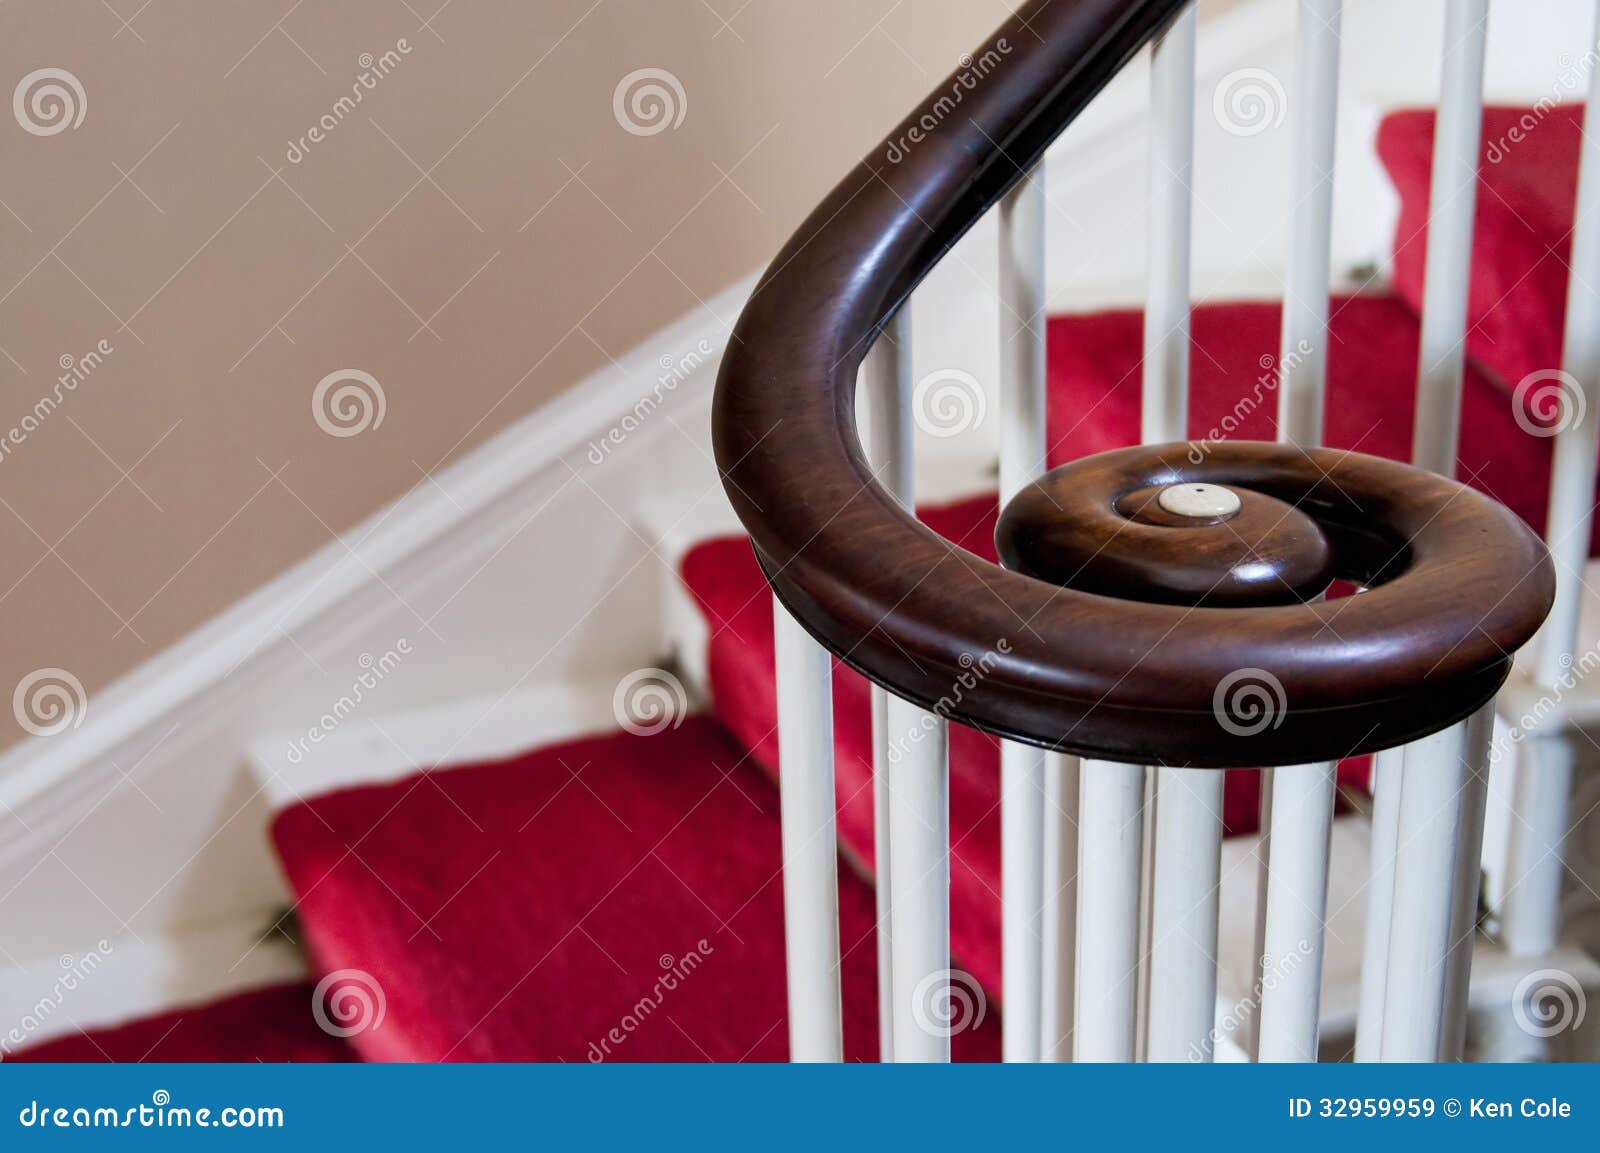 wooden spiral handrail